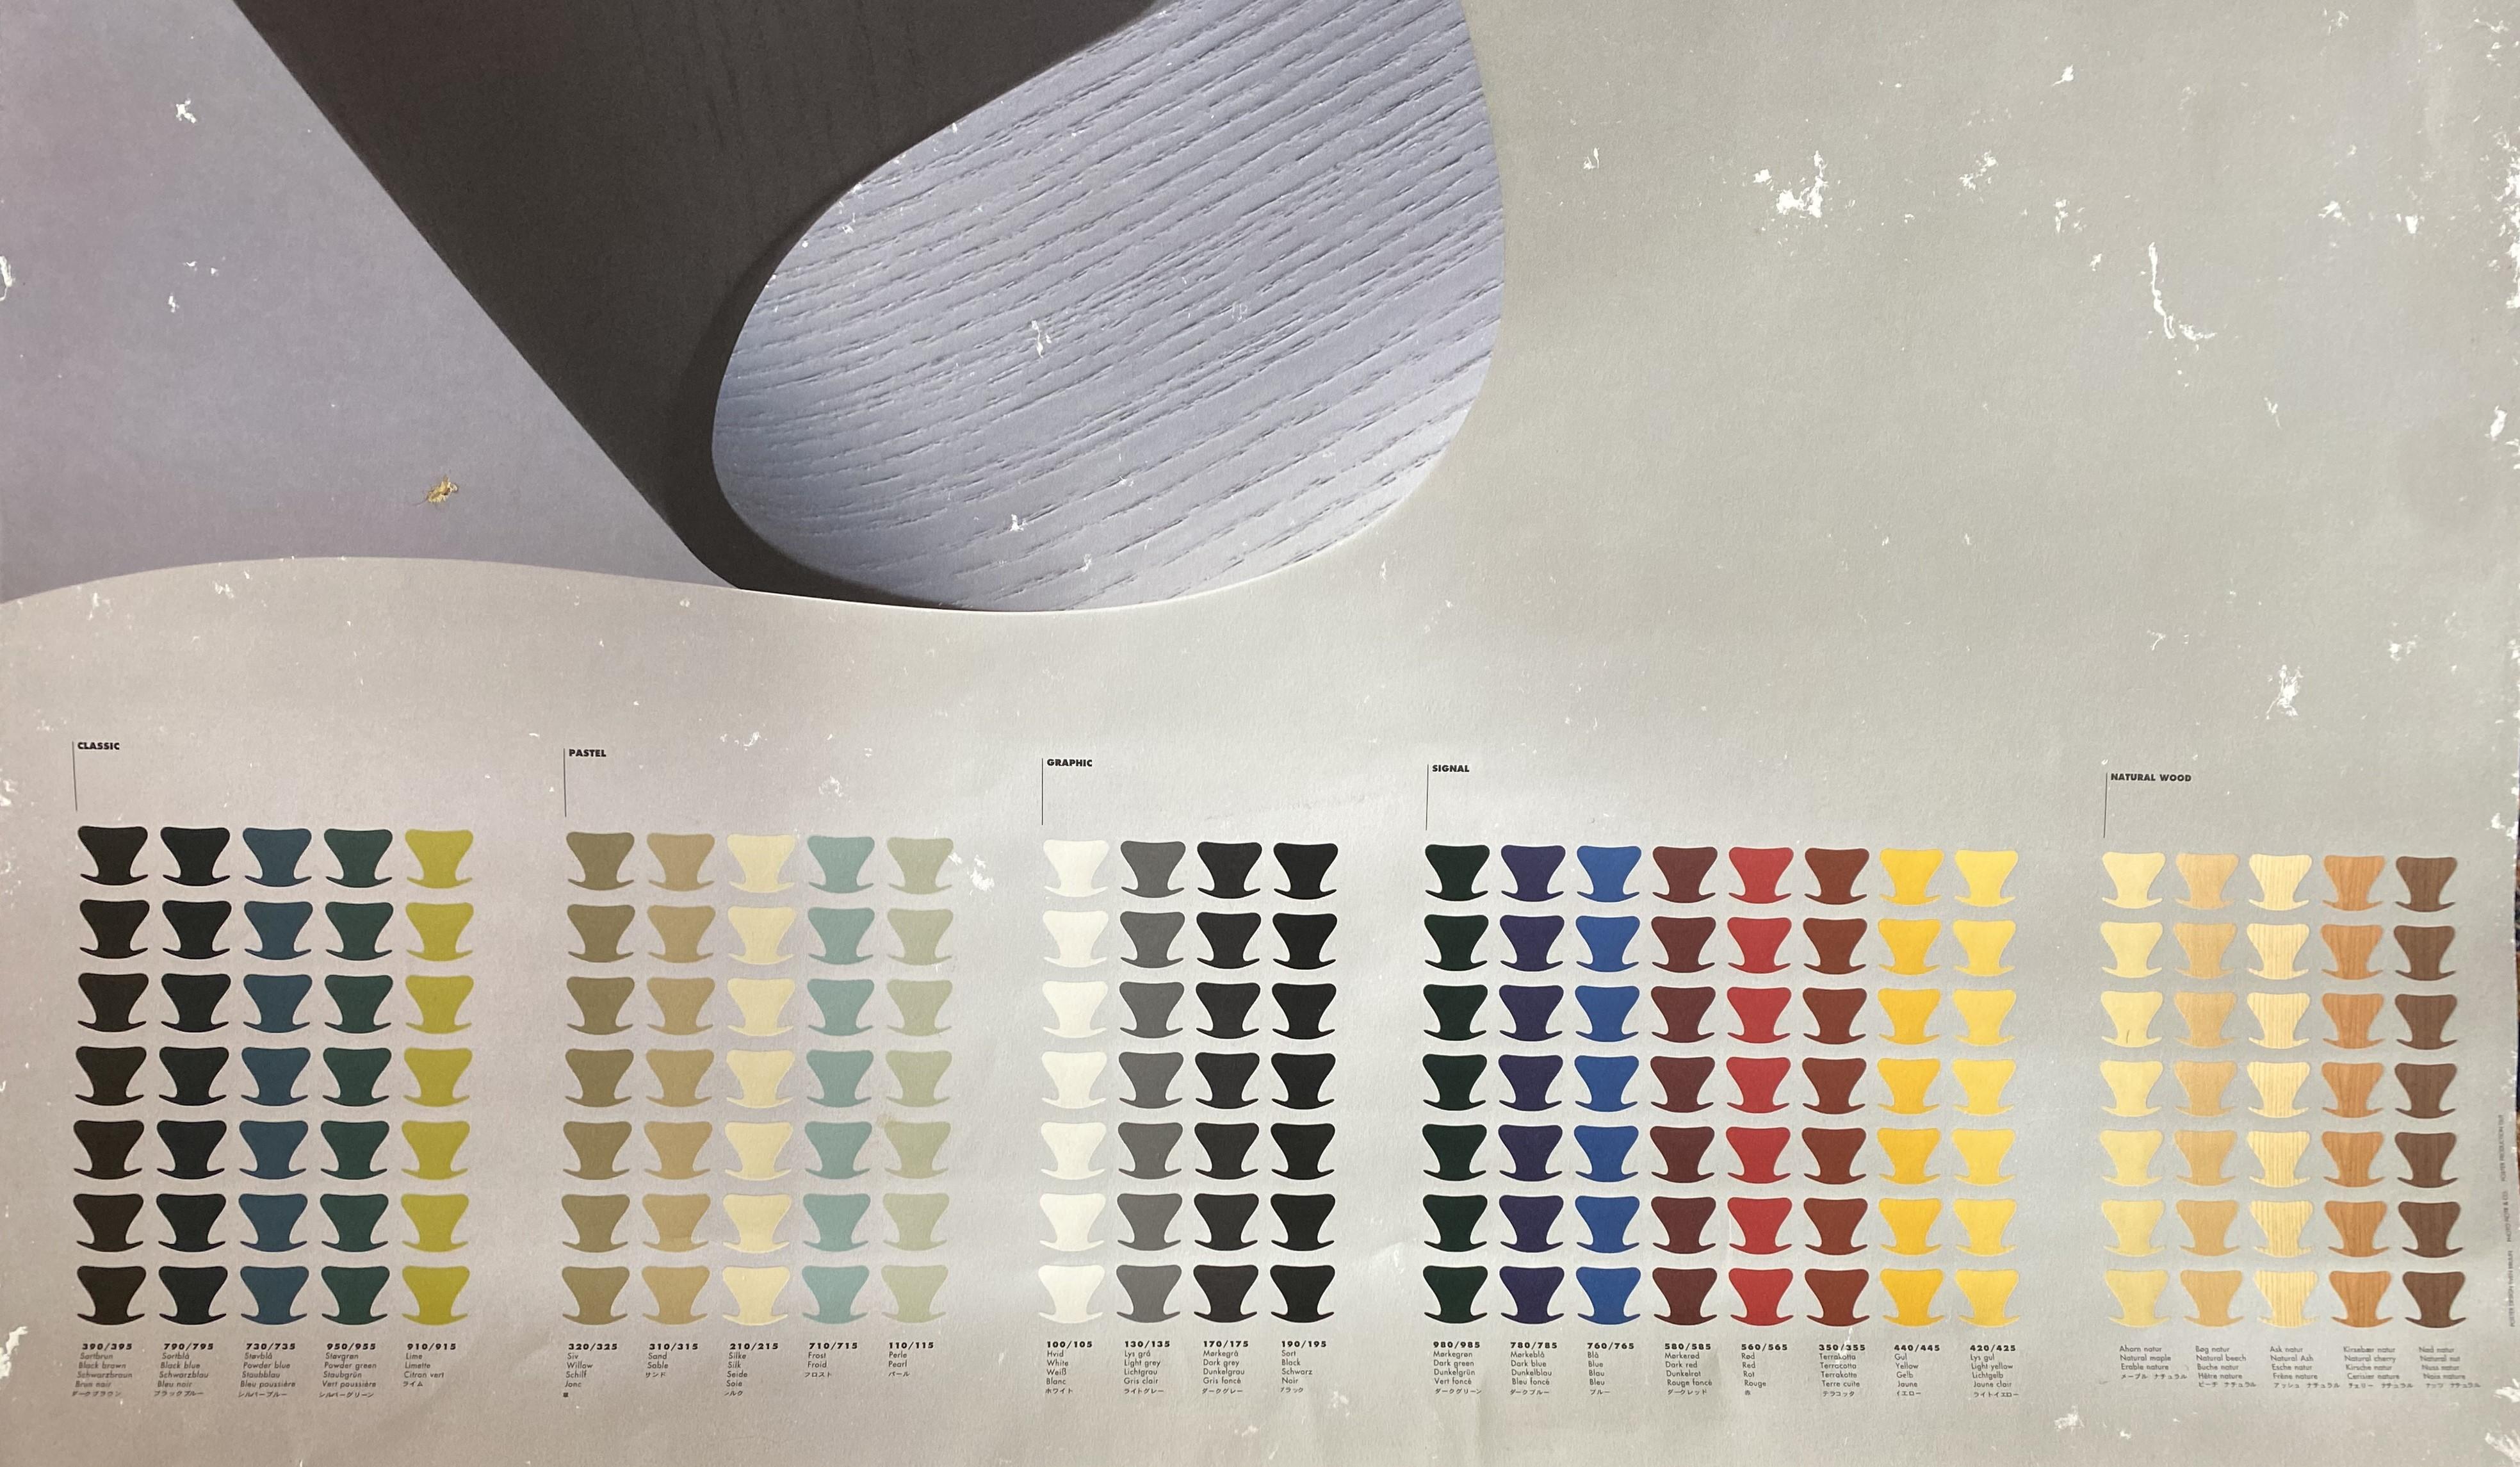 Voici une très rare et désirable affiche de mobilier du designer danois Arne Jacobsen pour Fritz Hansen représentant la chaise serie 7 ou chaise papillon dans une variété de différentes couleurs disponibles.

Arne Jacobsen (danois, 1902-1971) était